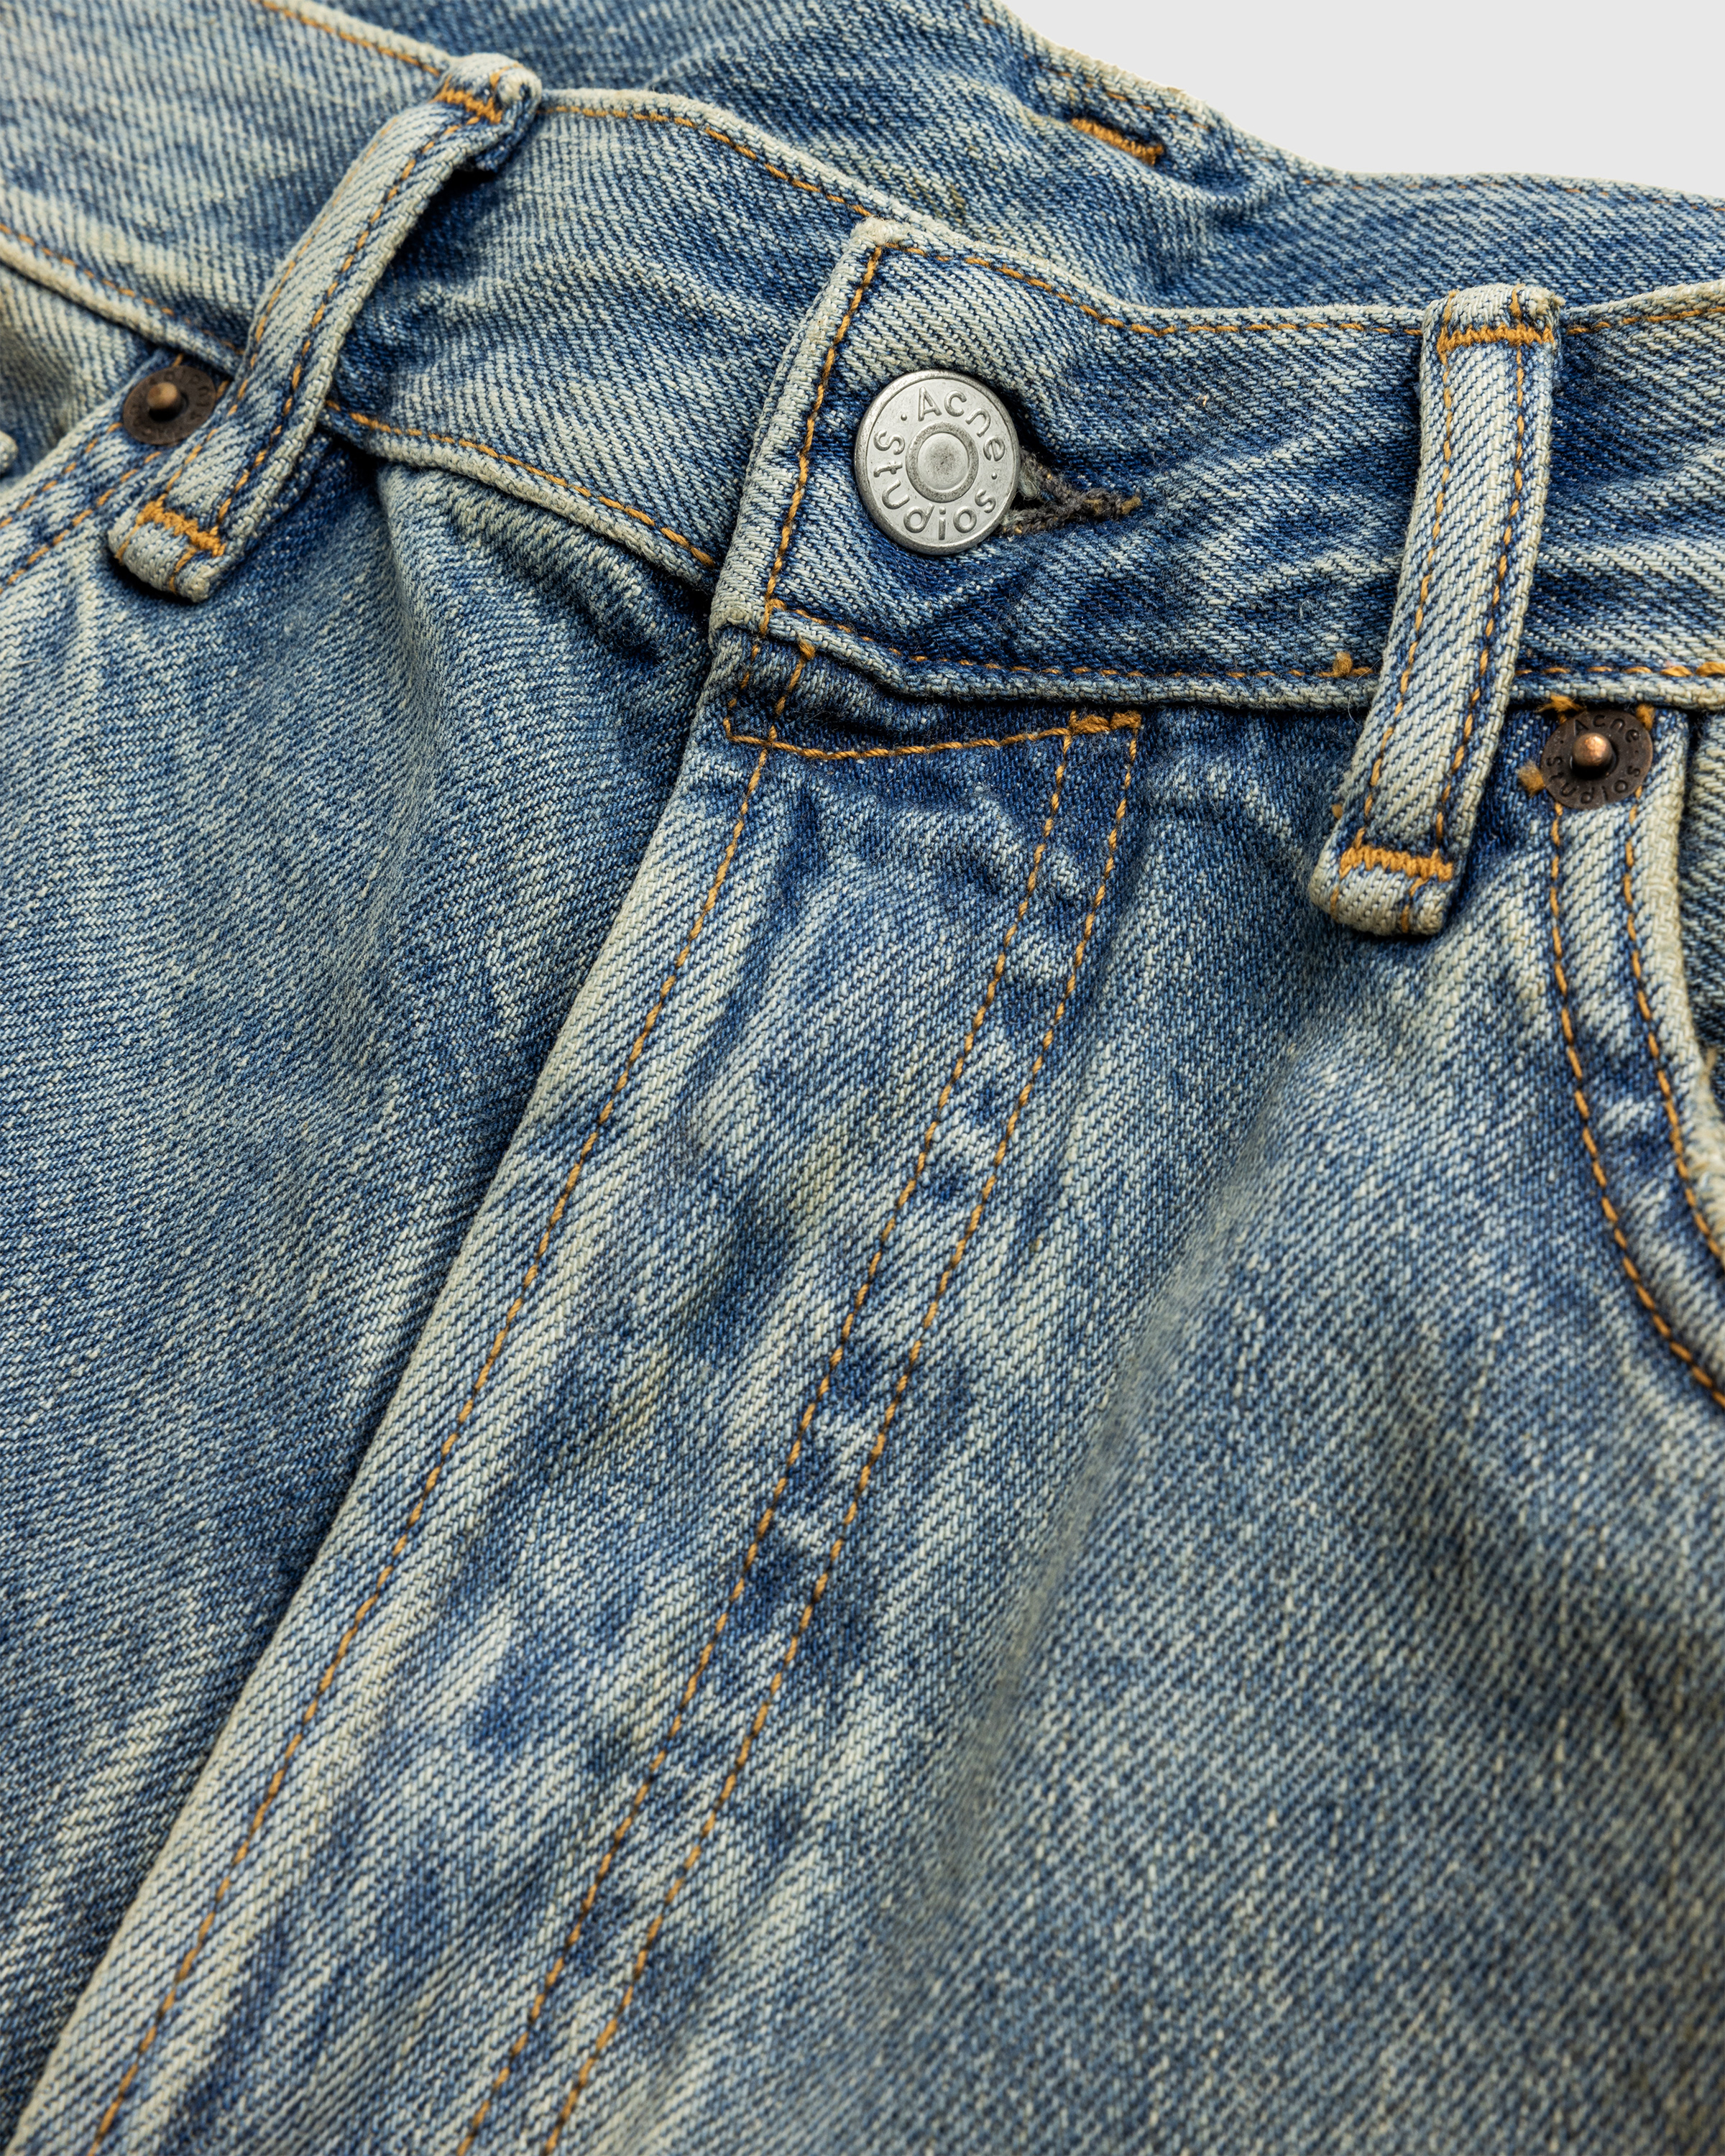 Acne Studios – Loose Fit Jeans 2021M Mid Blue - Denim - Blue - Image 7